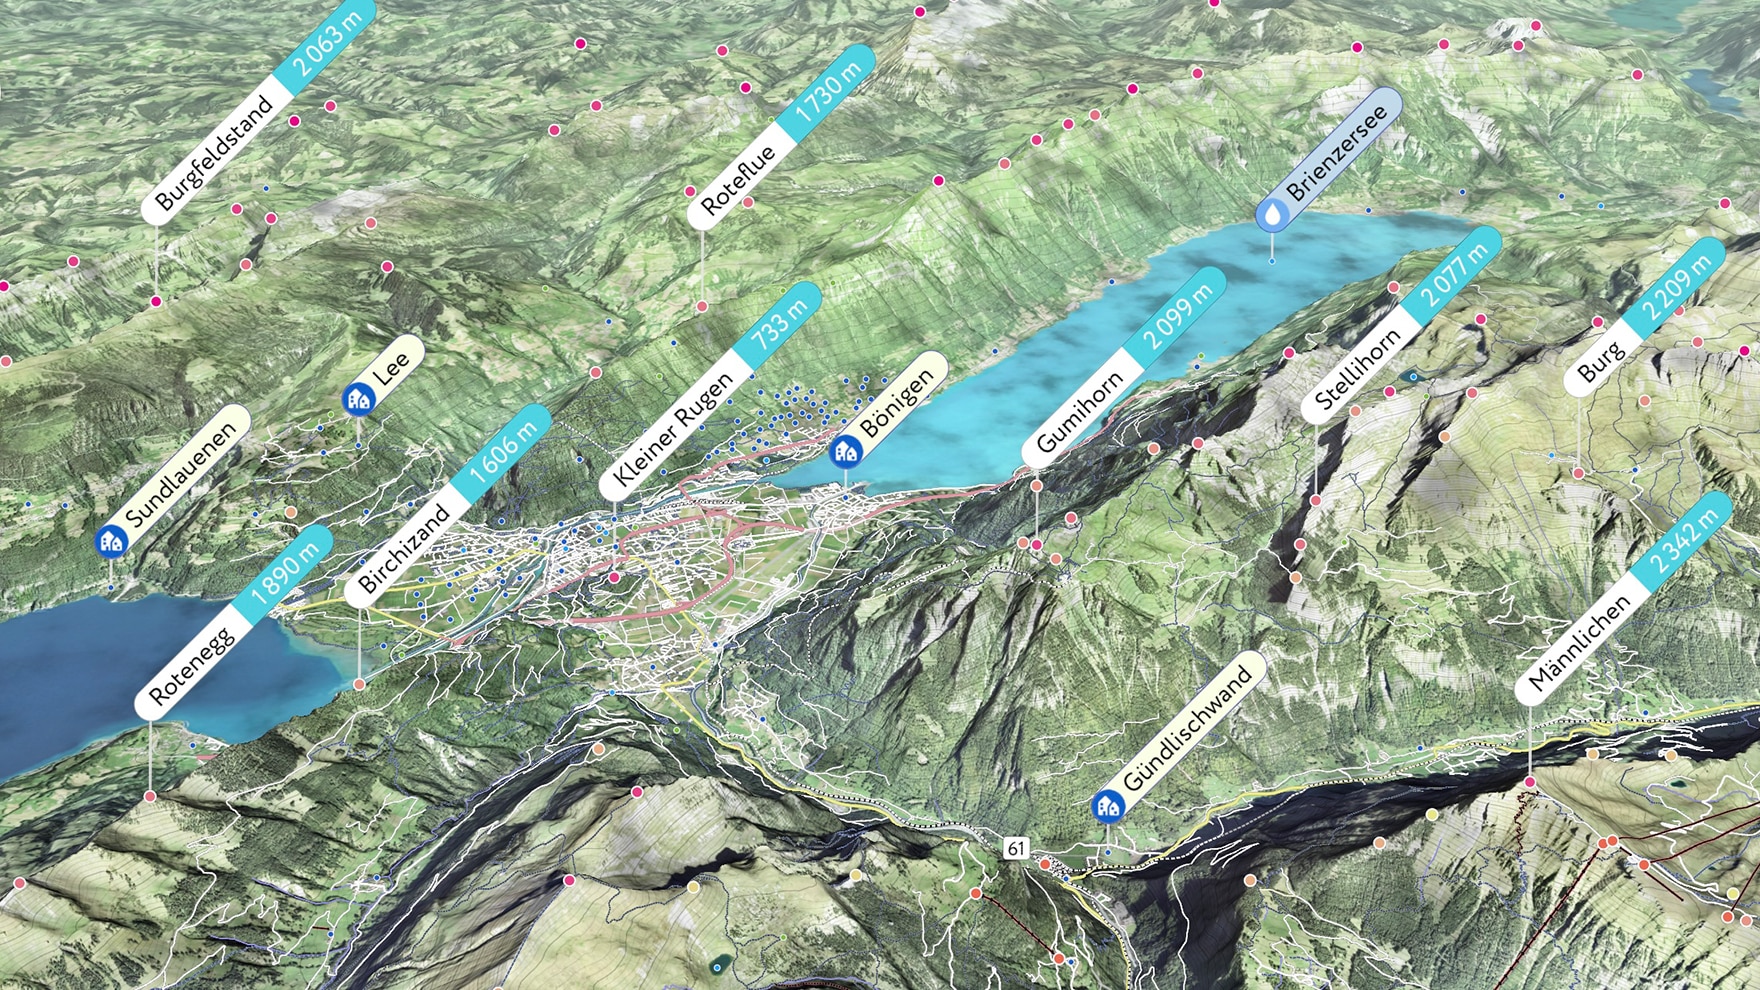 Durch die Visualisierung der Wanderwege und den realitätsnahen 3D-Karten, wird die Tourenplanung leicht gemacht.